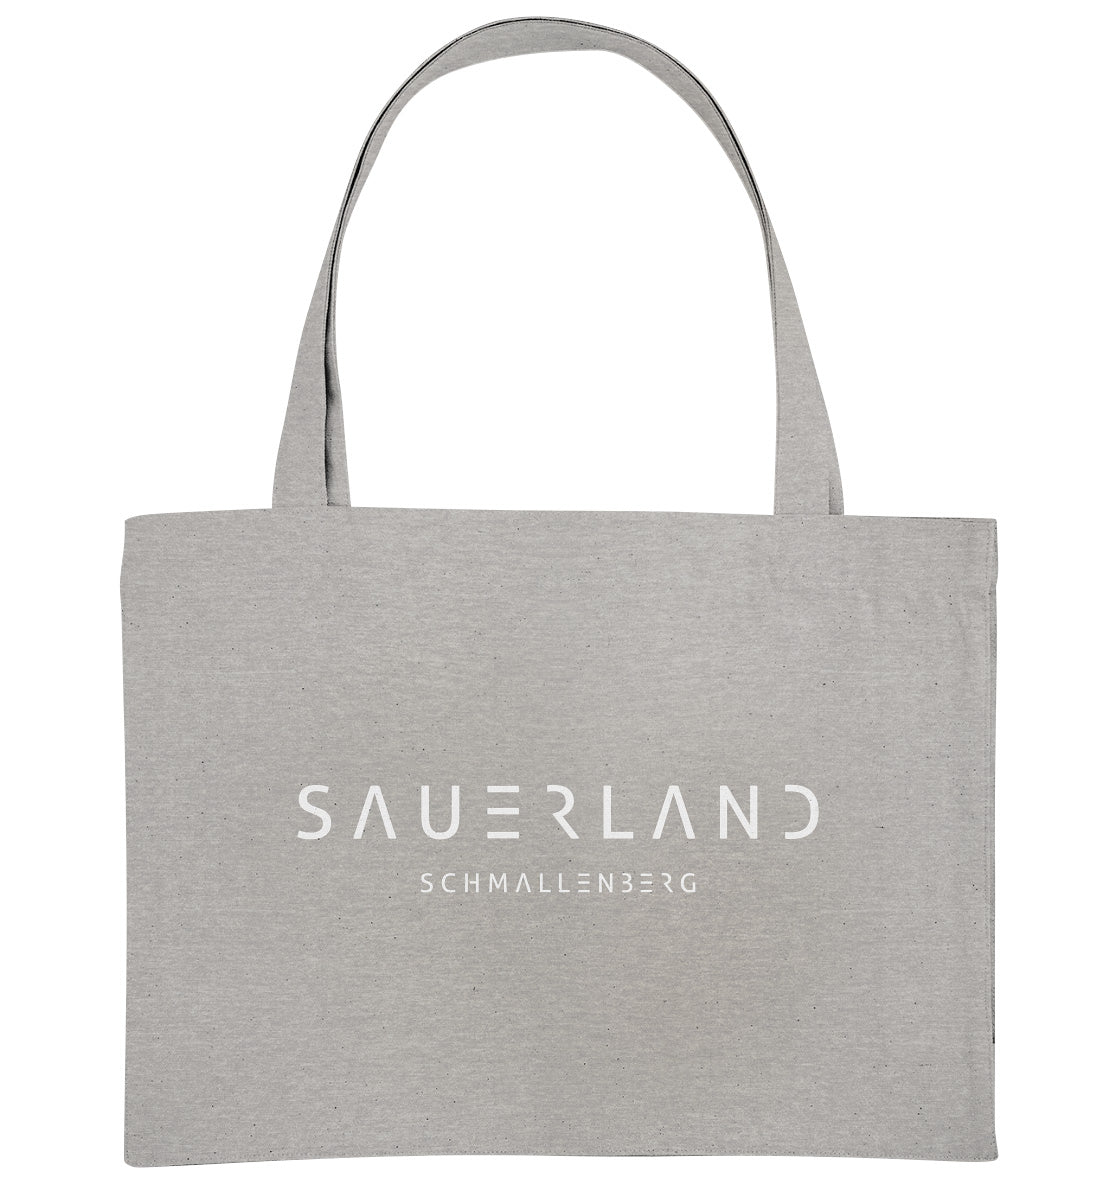 Hellgraue Baumwolltasche zum Umhängen ist mit dem neuen Sauerland-logo in weiß bedruckt. Darunter ist der Dorfname Schmallenberg aufgedruckt.